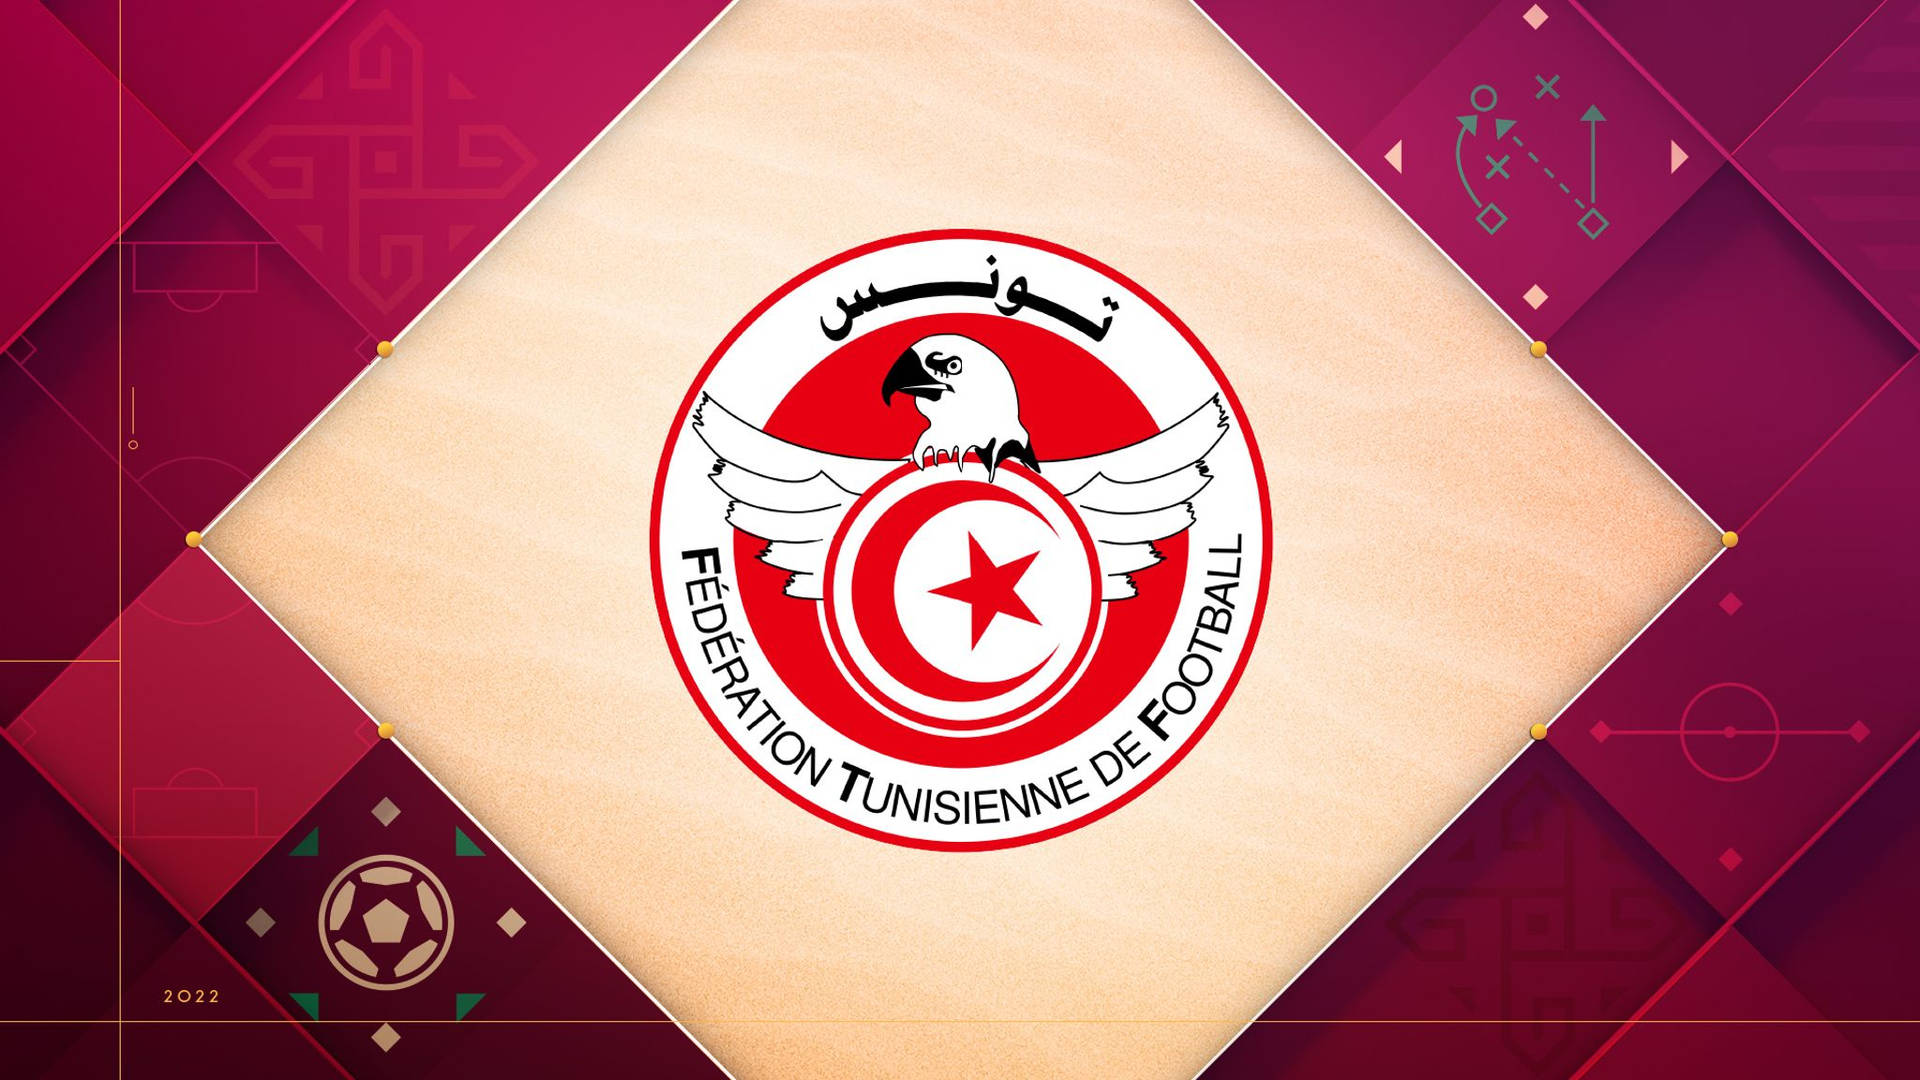 Tunisiensnationella Fotbollslagets Logga I Rött Estetiskt Utförande. Wallpaper